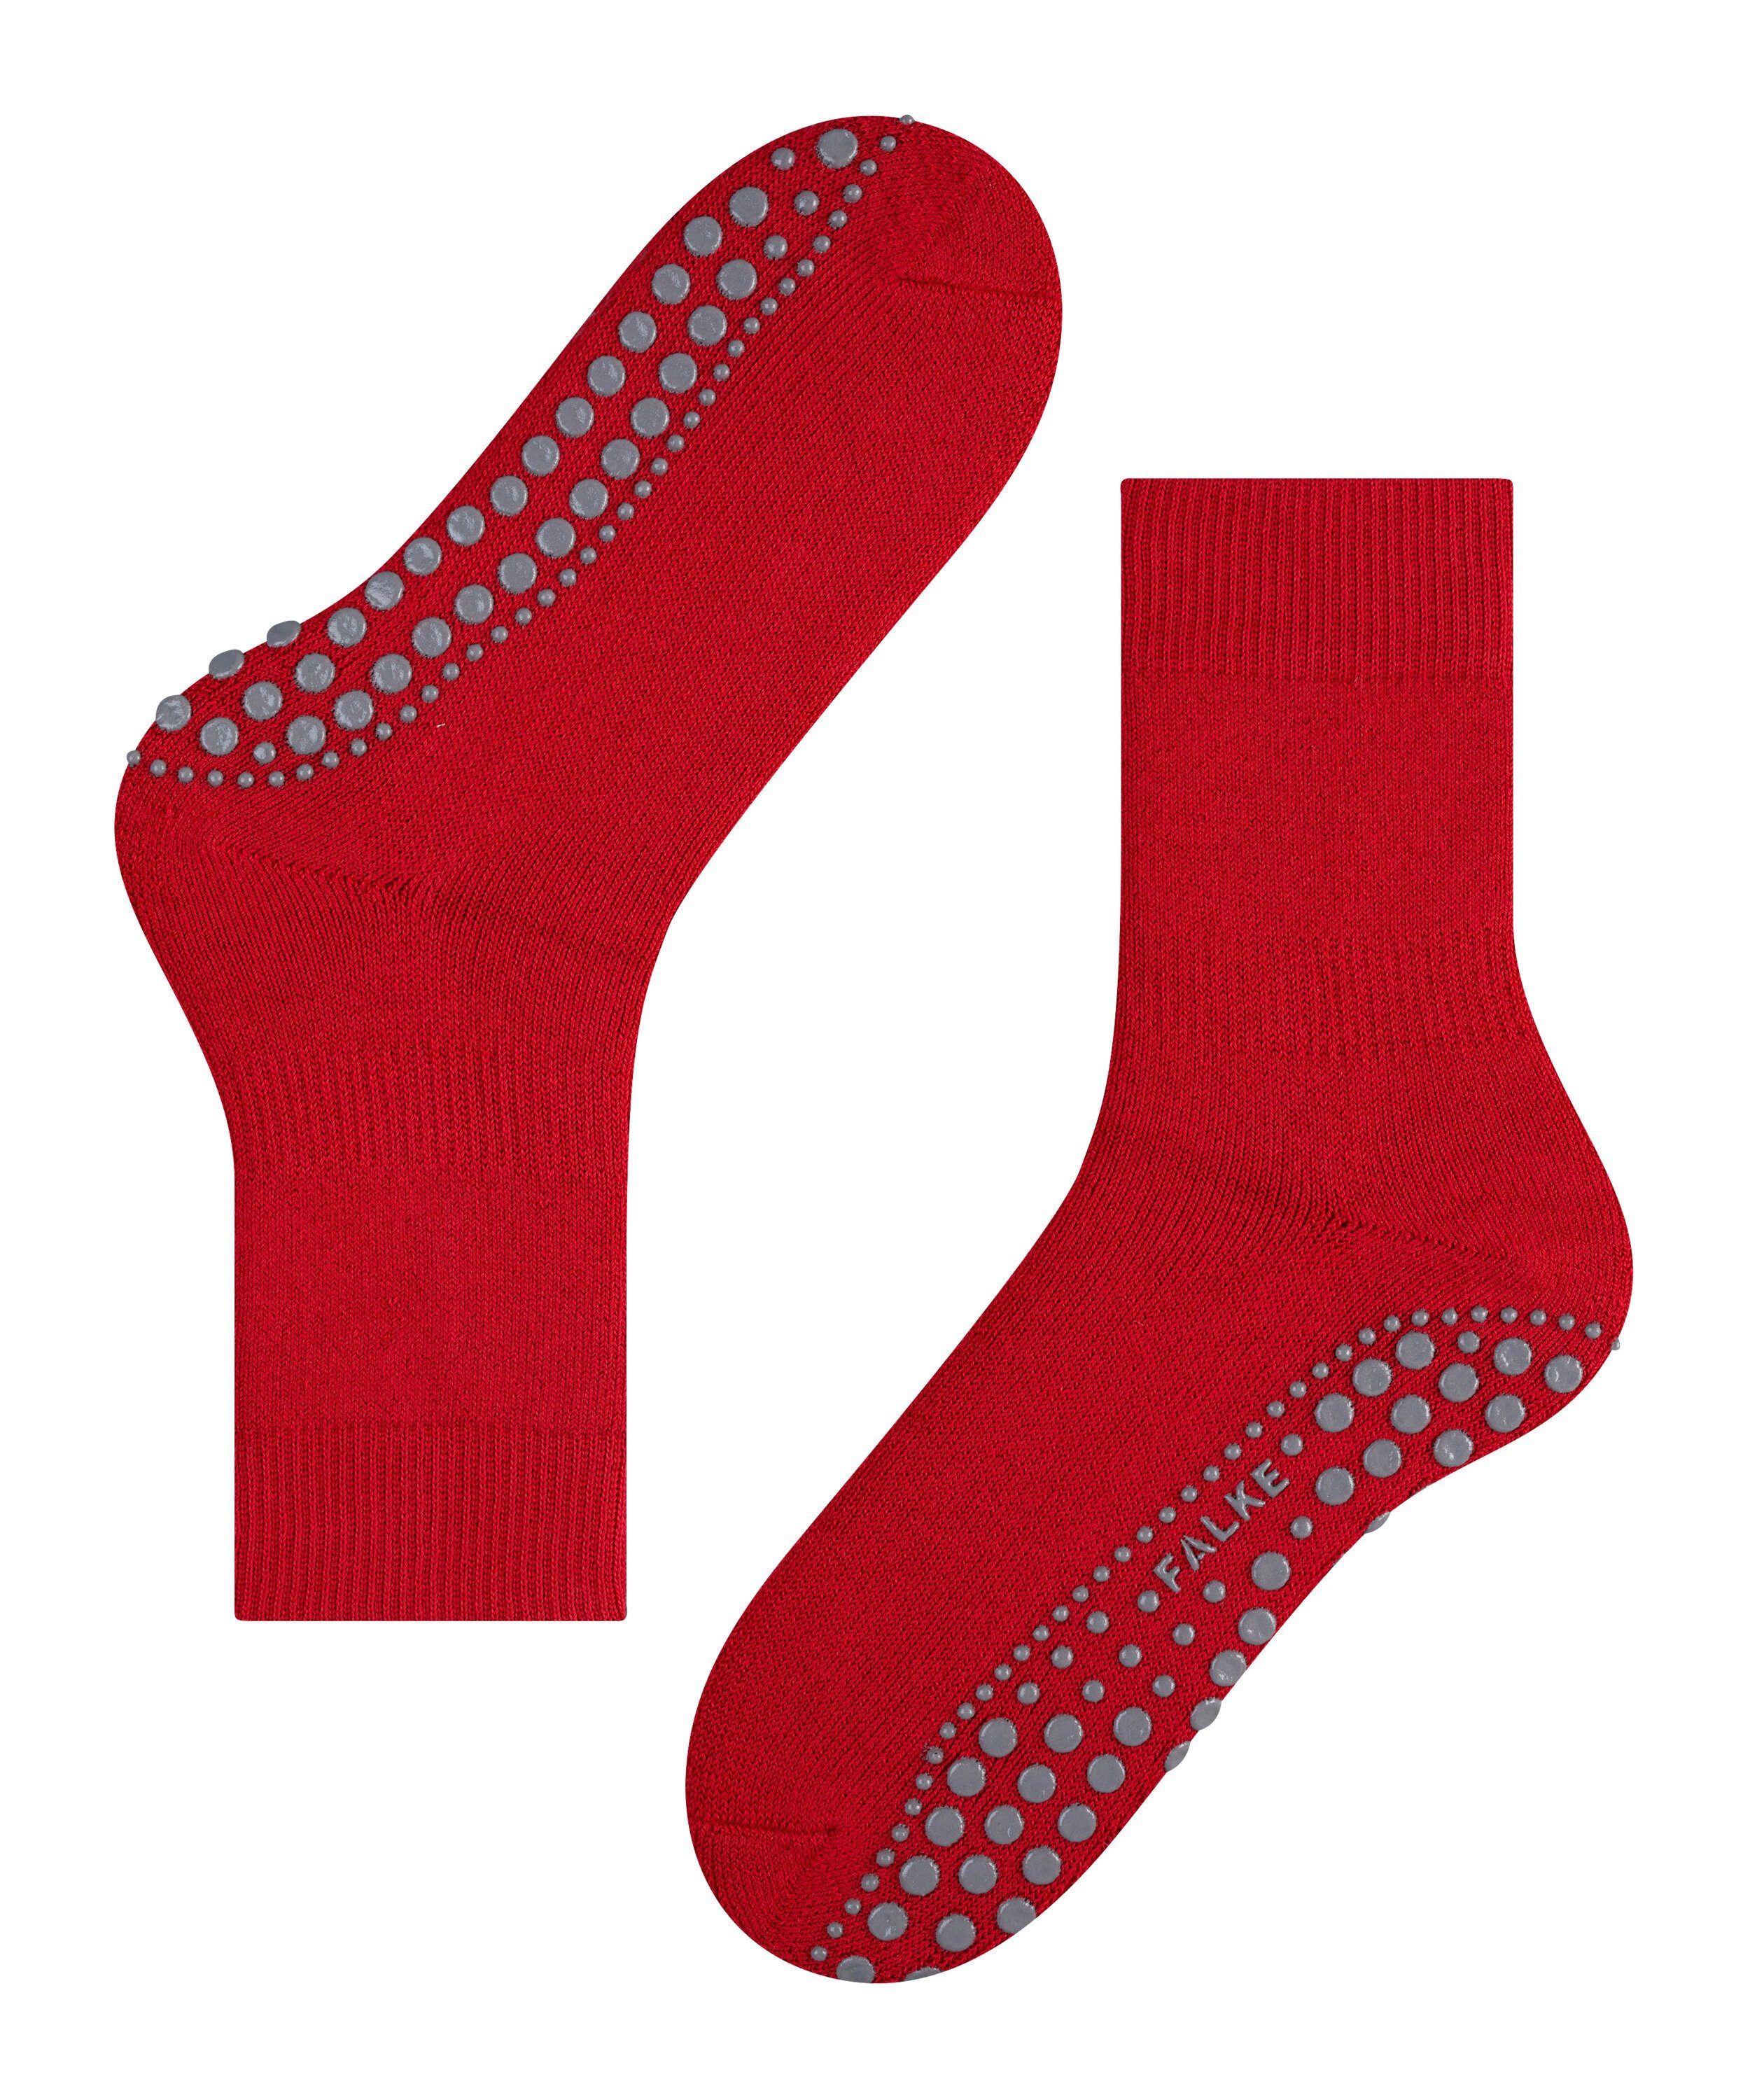 FALKE Socken Homepads (8280) (1-Paar) scarlet